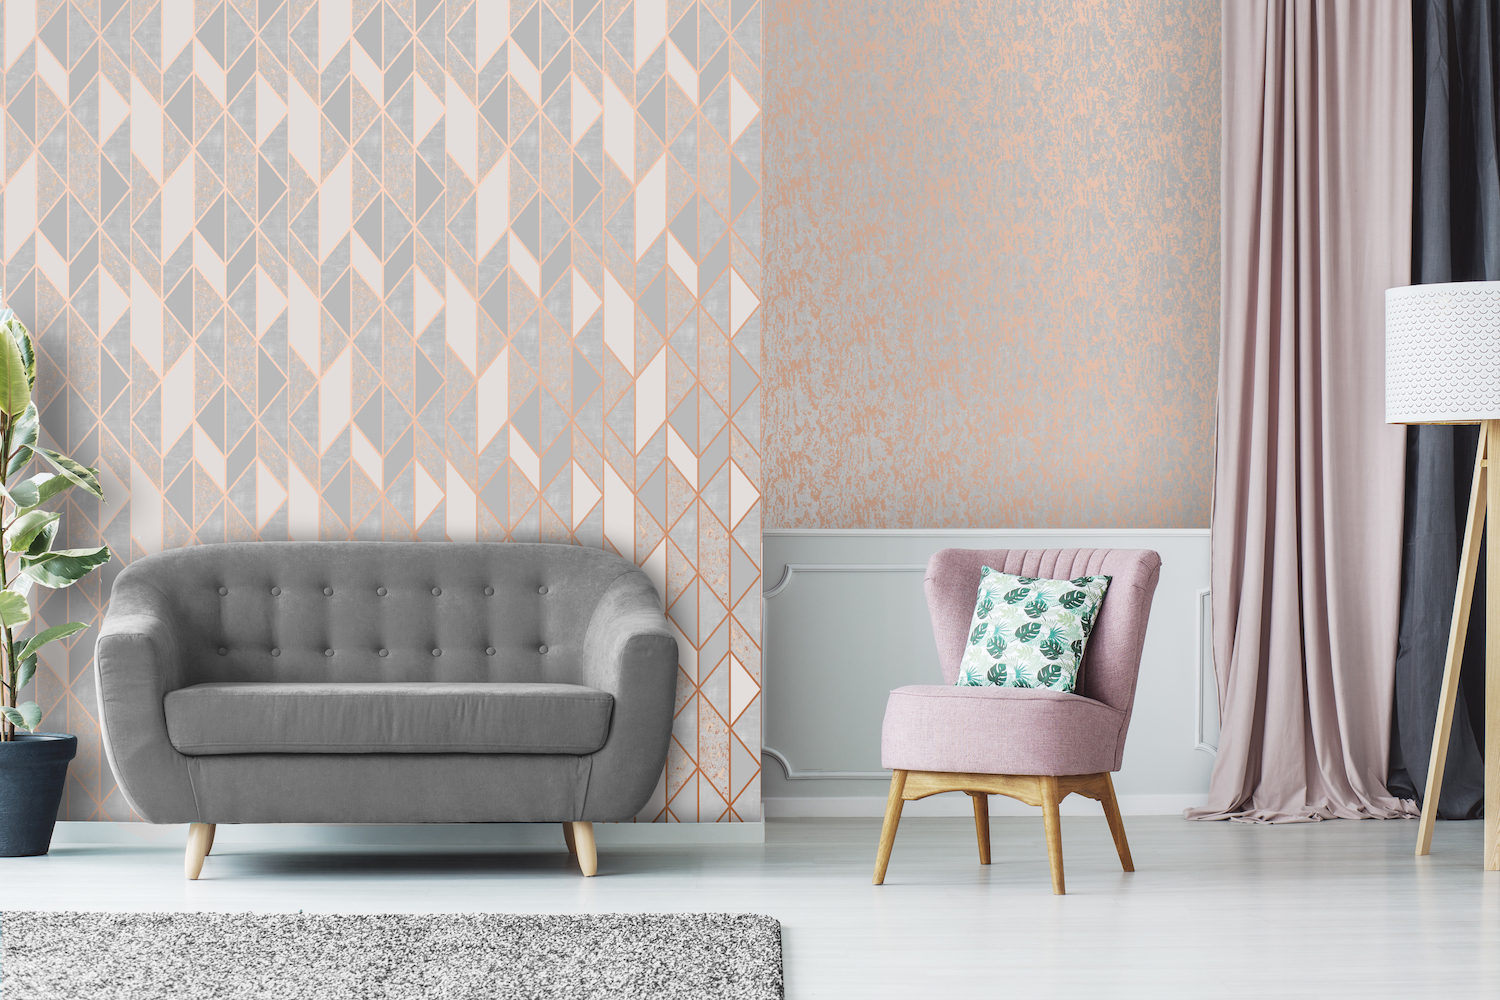 Superfresco Milan Geo Rose Gold Wallpaper - Rose Gold Wallpaper Living Room - HD Wallpaper 